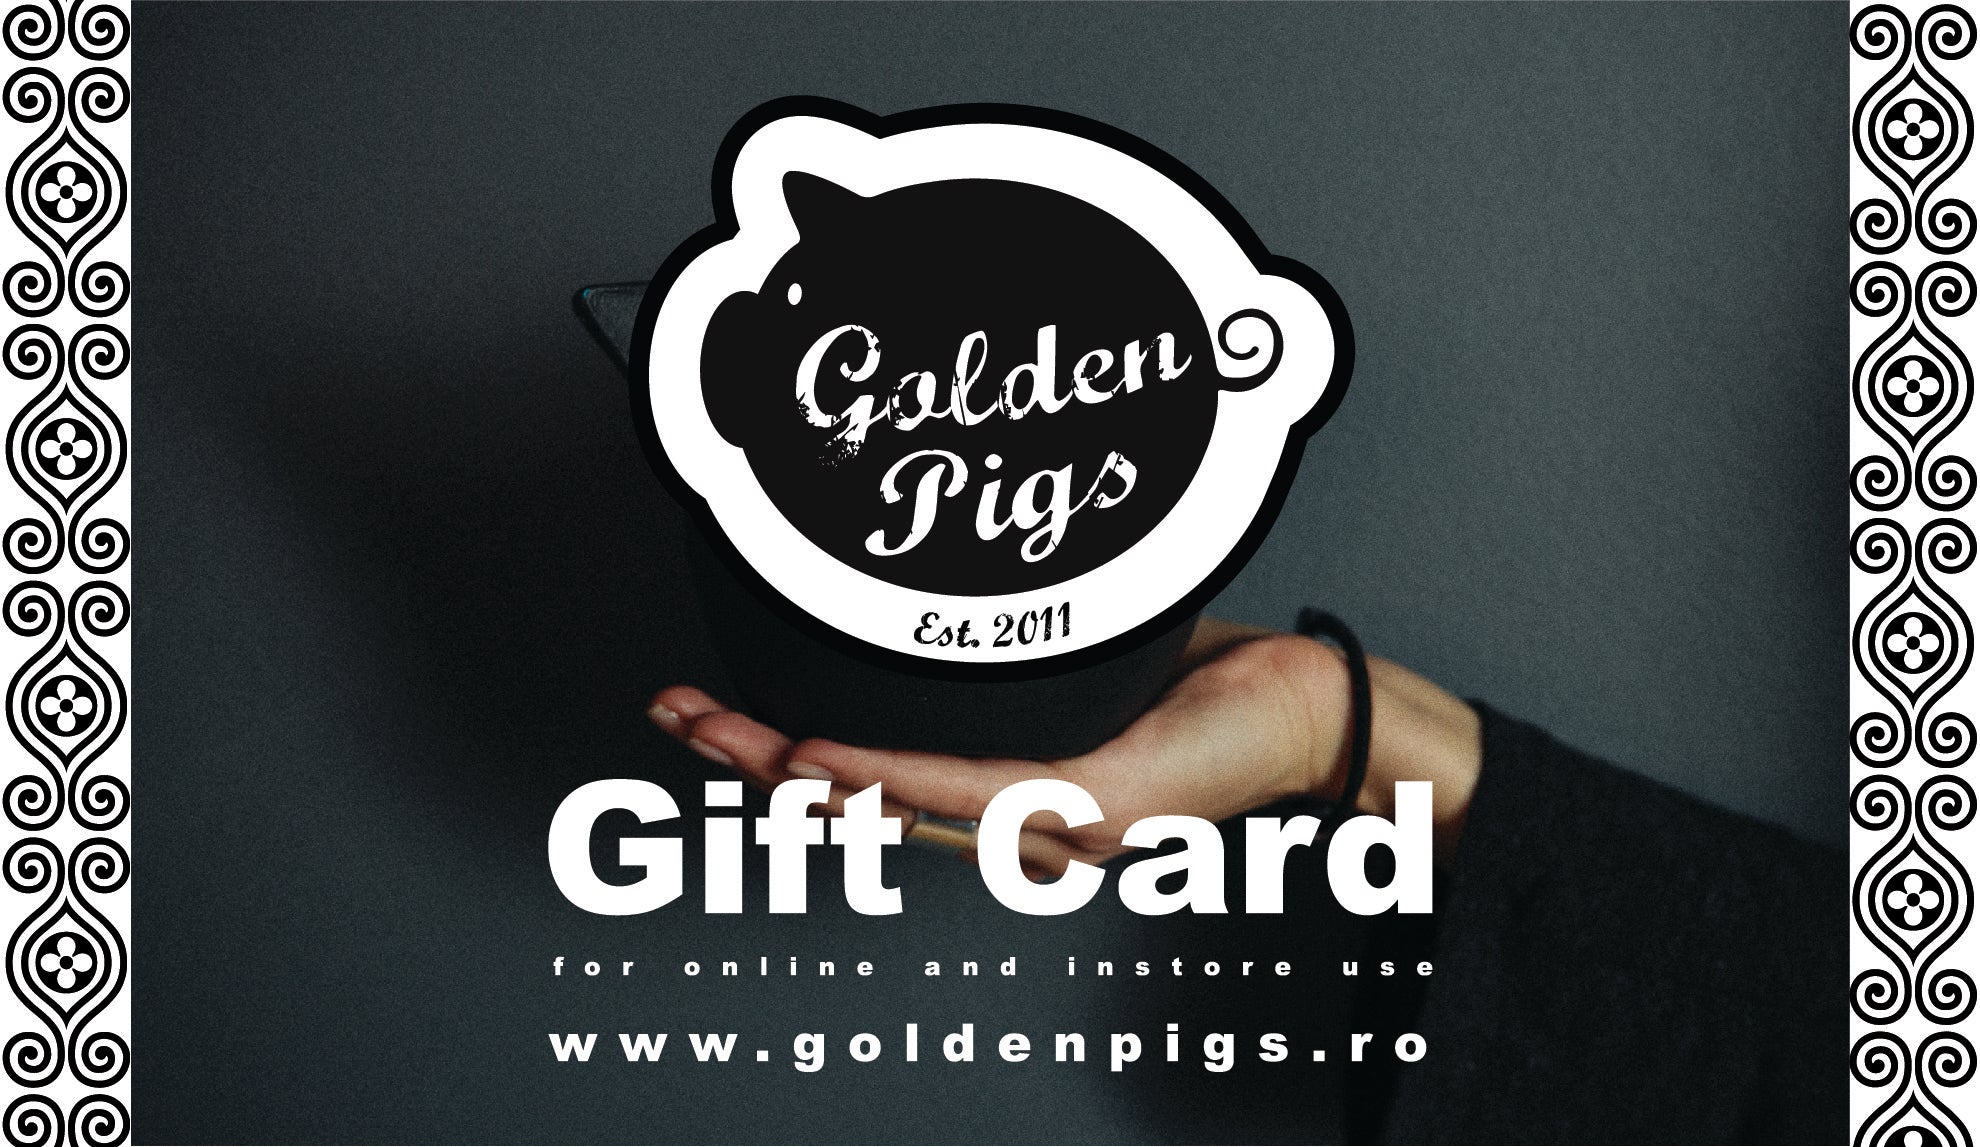 Golden Pigs Gift Card-GoldenPigs